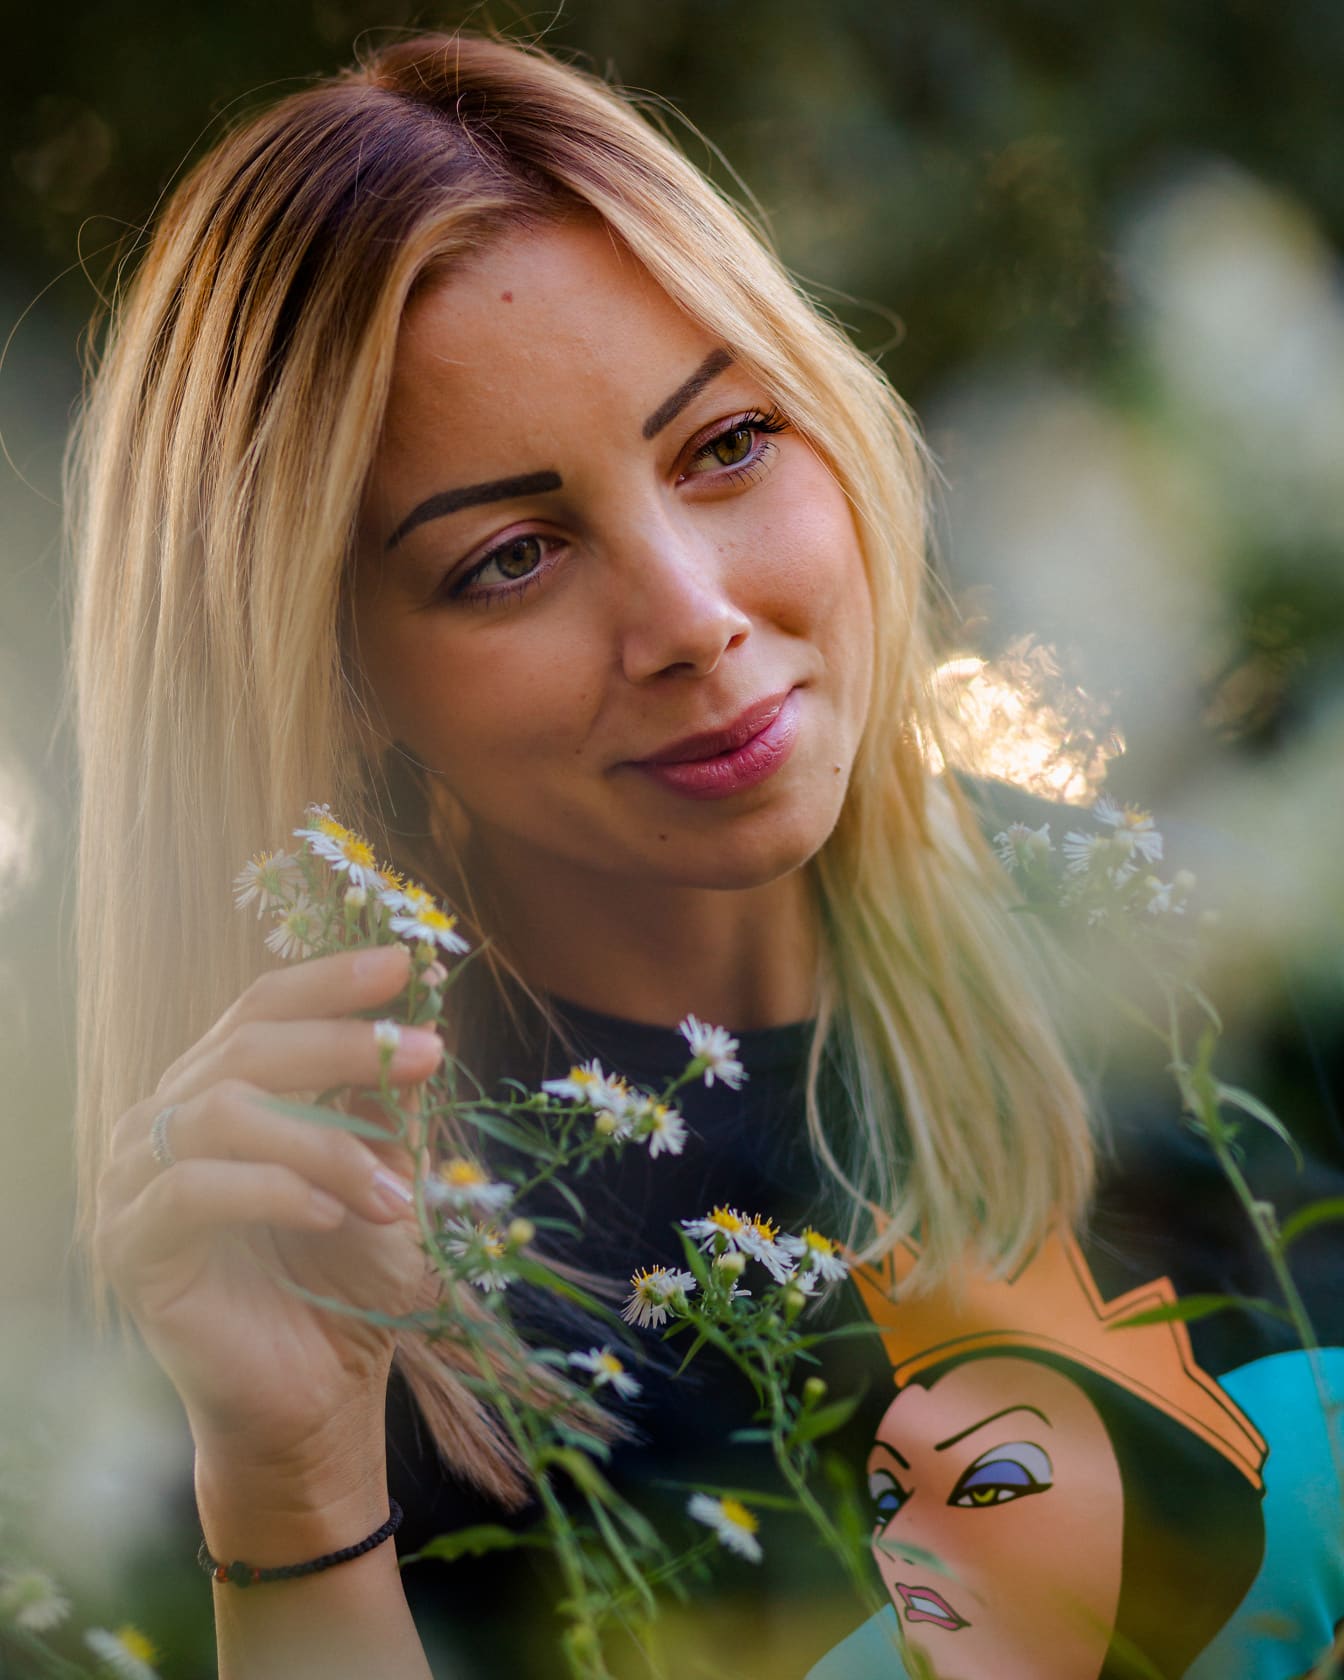 Retrato de una mujer con cara hermosa sosteniendo una flor de manzanilla